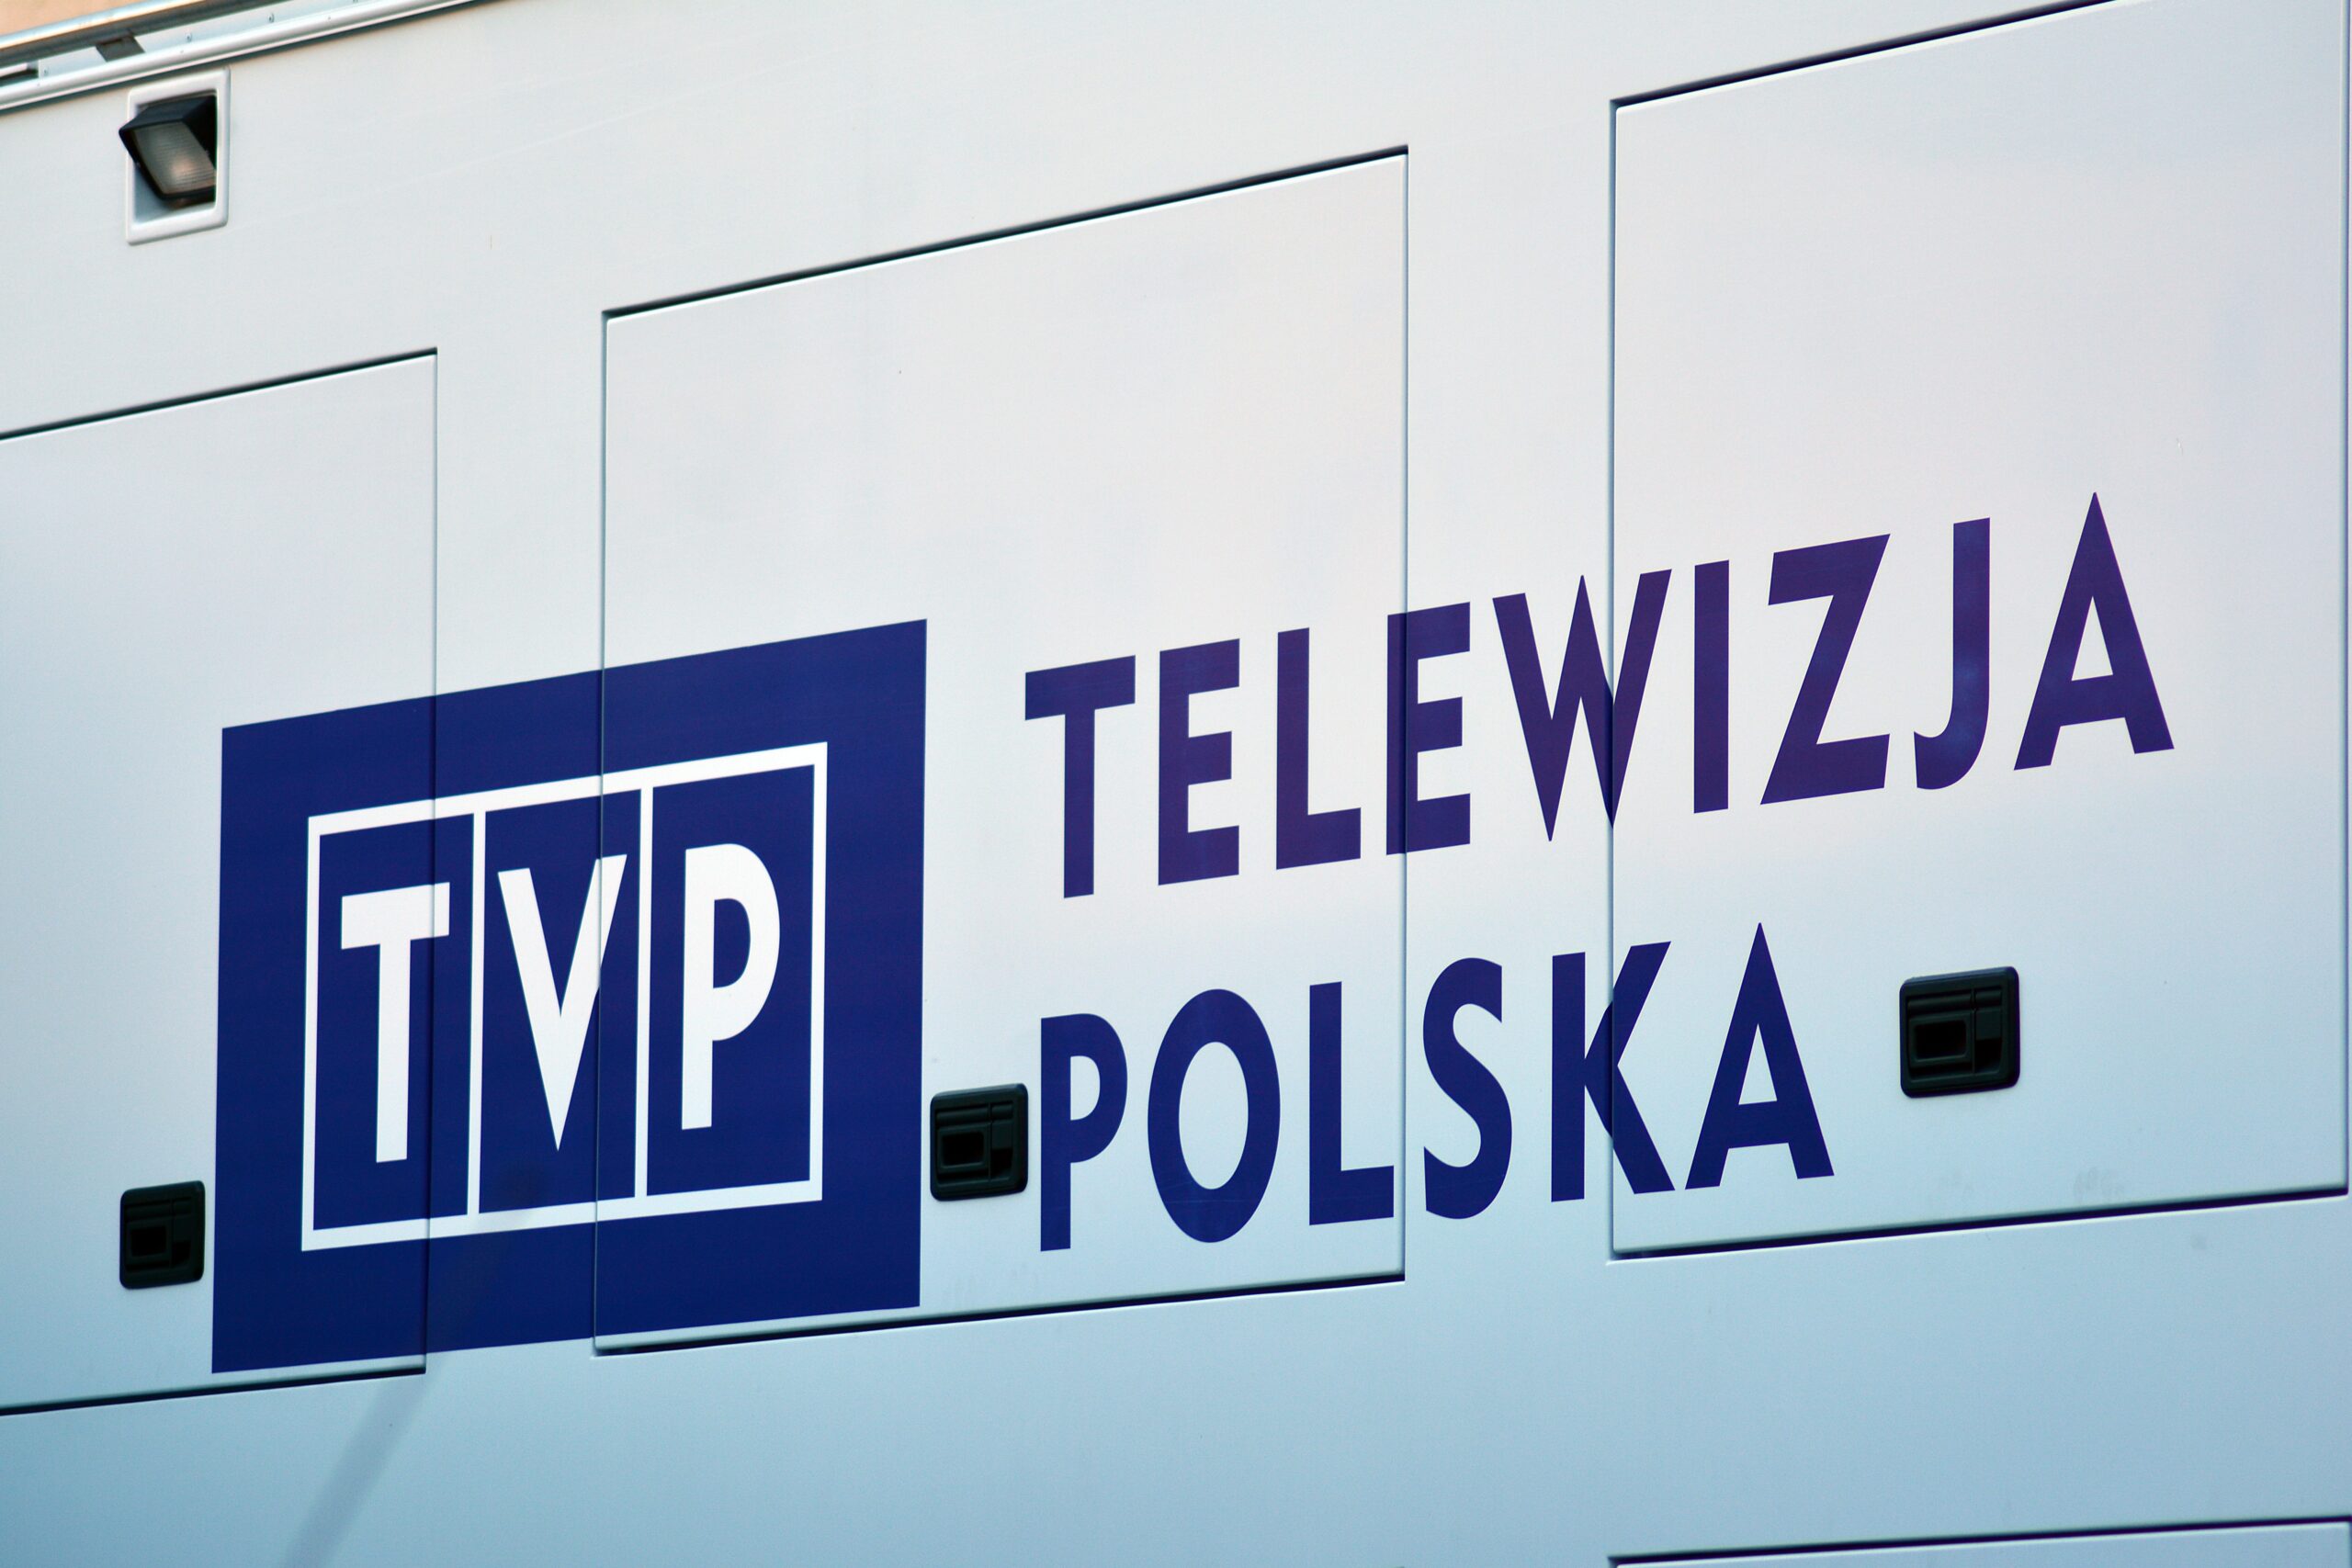 Biały pojazd z dużym logo Telewizji Polskiej TVP i napisem "TELEWIZJA POLSKA". Likwidacja TVP oznacza, że może zniknąć